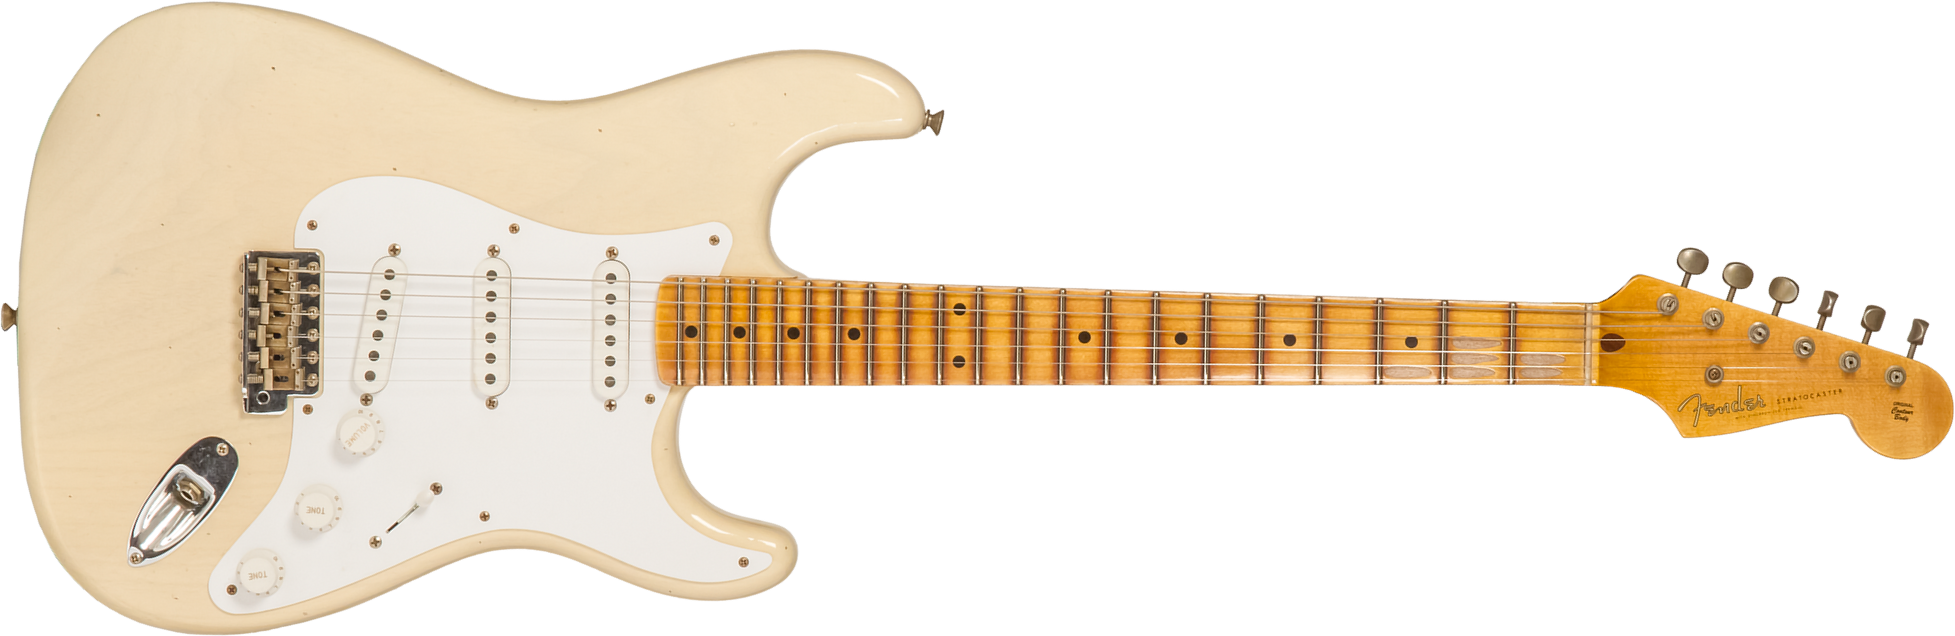 Fender Custom Shop Strat 1954 70th Anniv. 3s Trem Mn #xn4159 - Journeyman Relic Vintage Blonde - Guitare Électrique Forme Str - Main picture